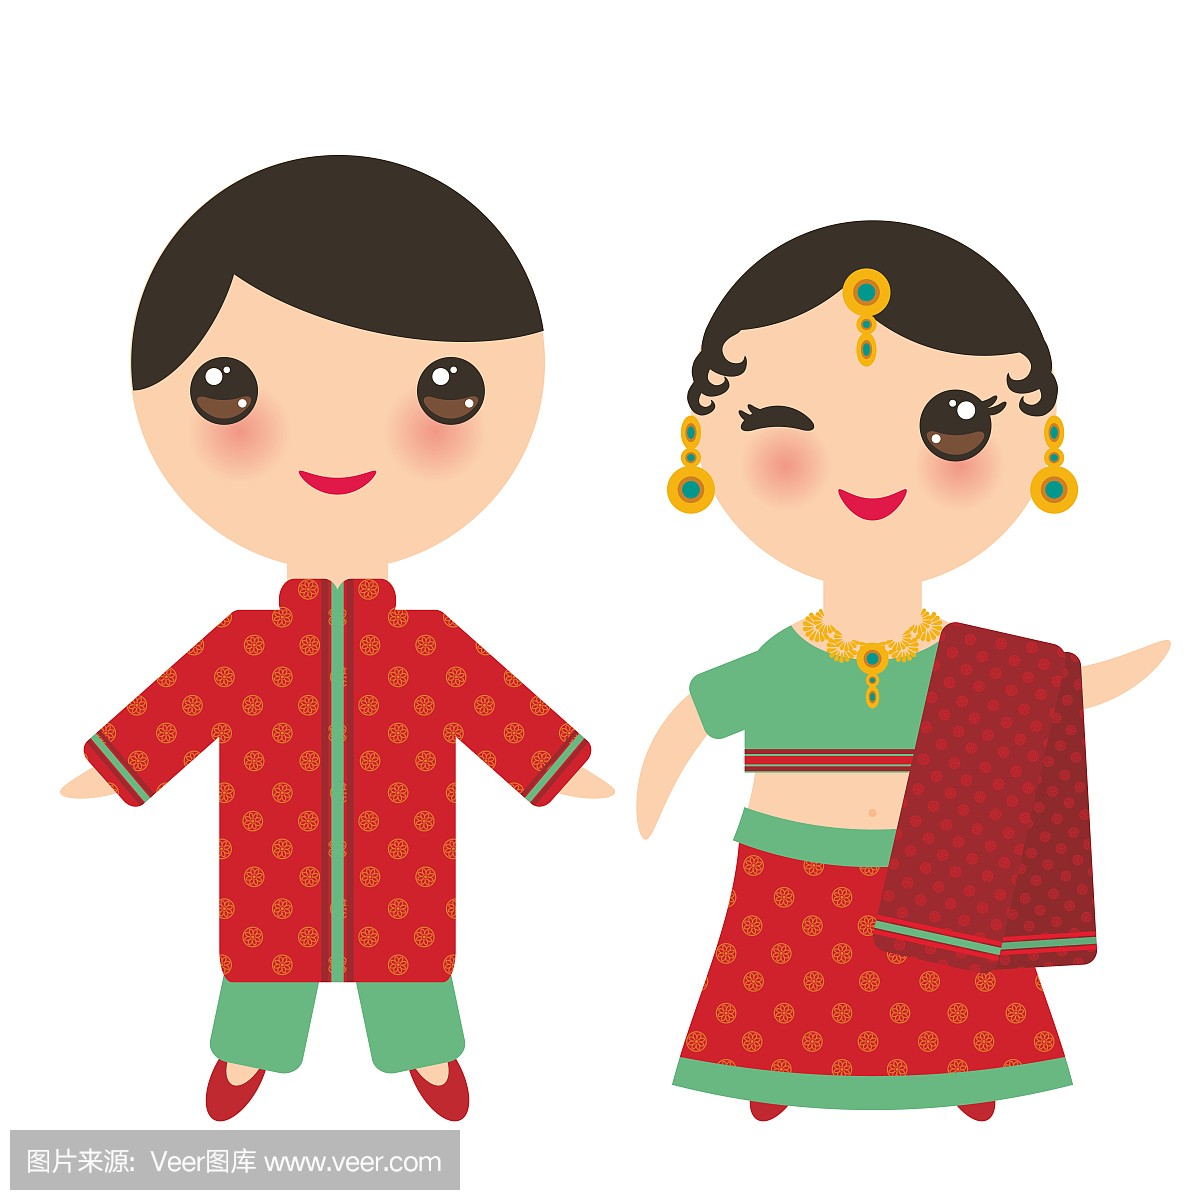 印度卡哇伊男孩和女孩在民族服装。在传统的印